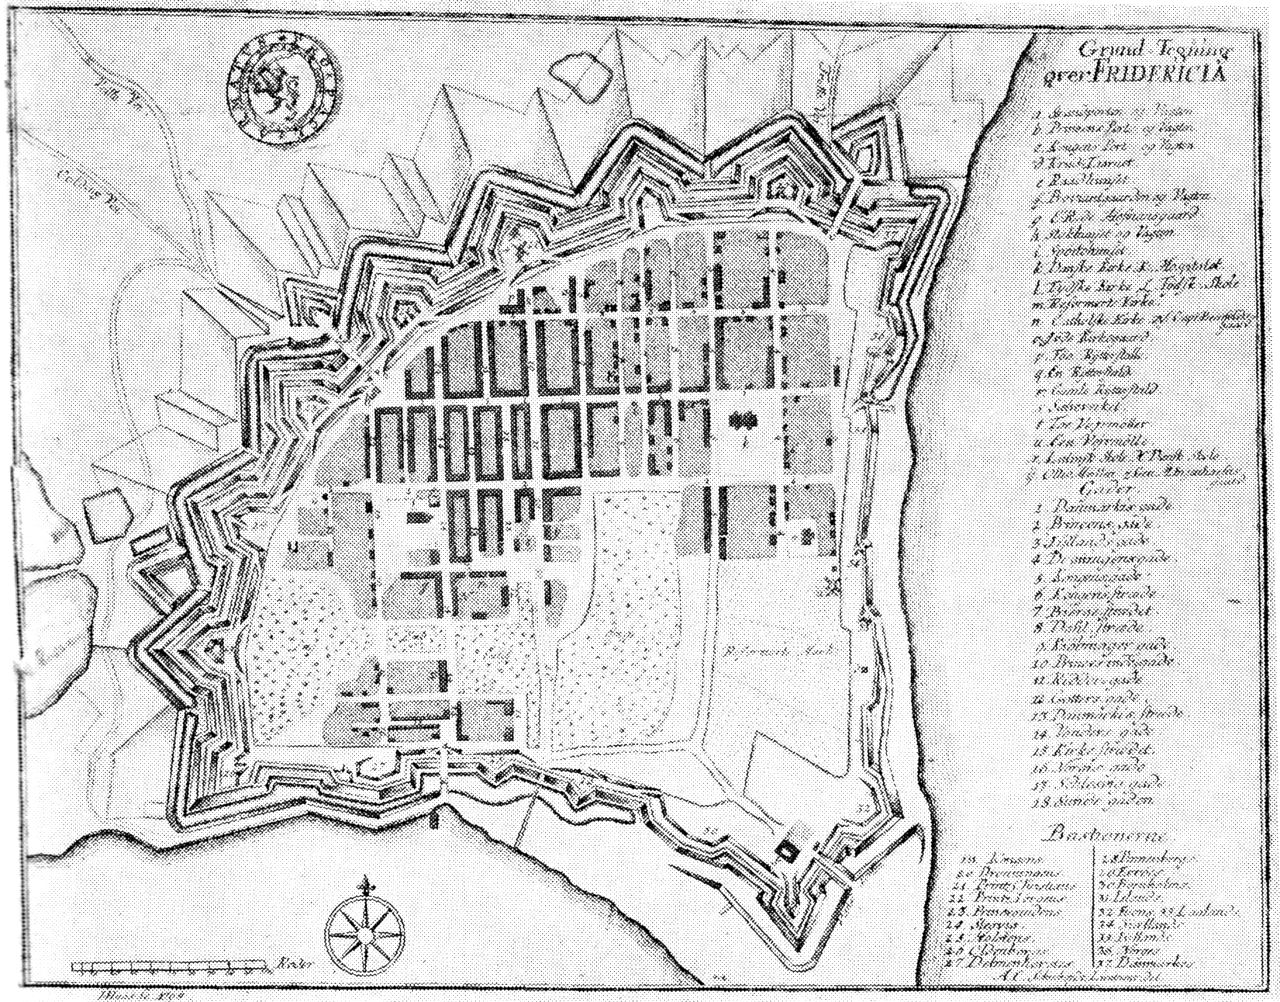 (Kort). Grundtegning over Fredericia 1768. Kobberstik i Pontoppidans Danske Atlas.